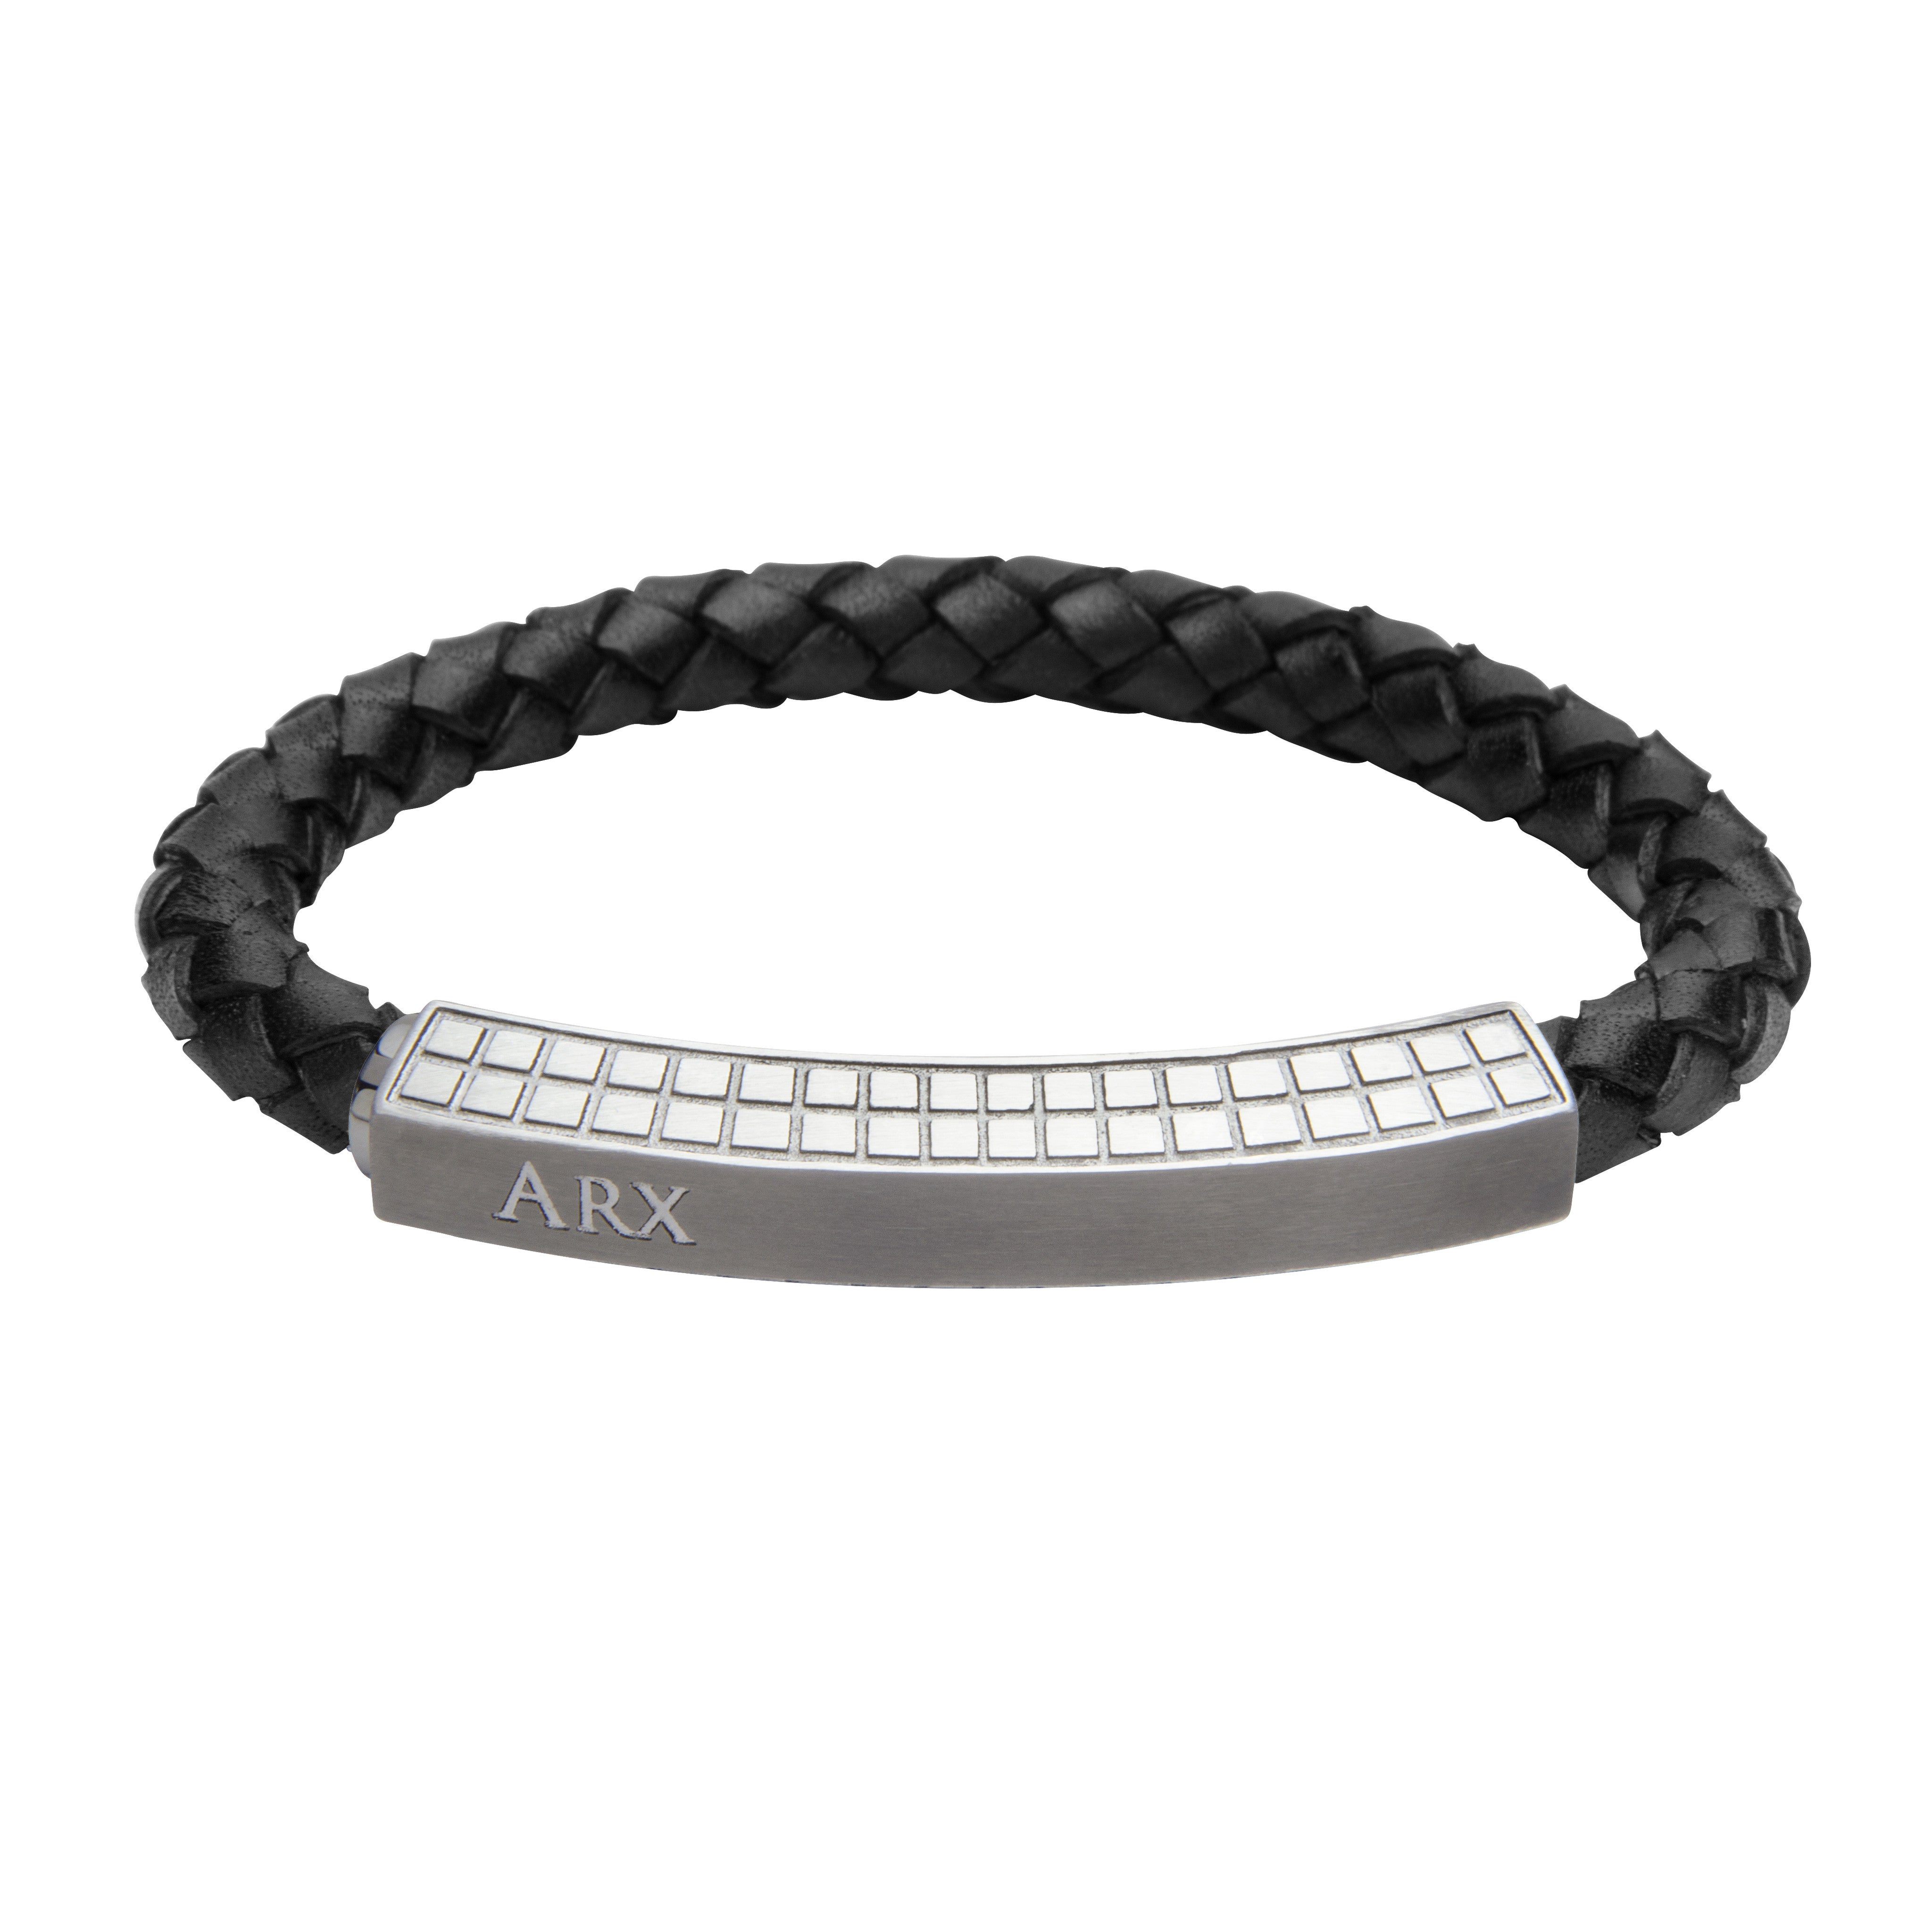 INB37 leather and steel adjustable bracelet